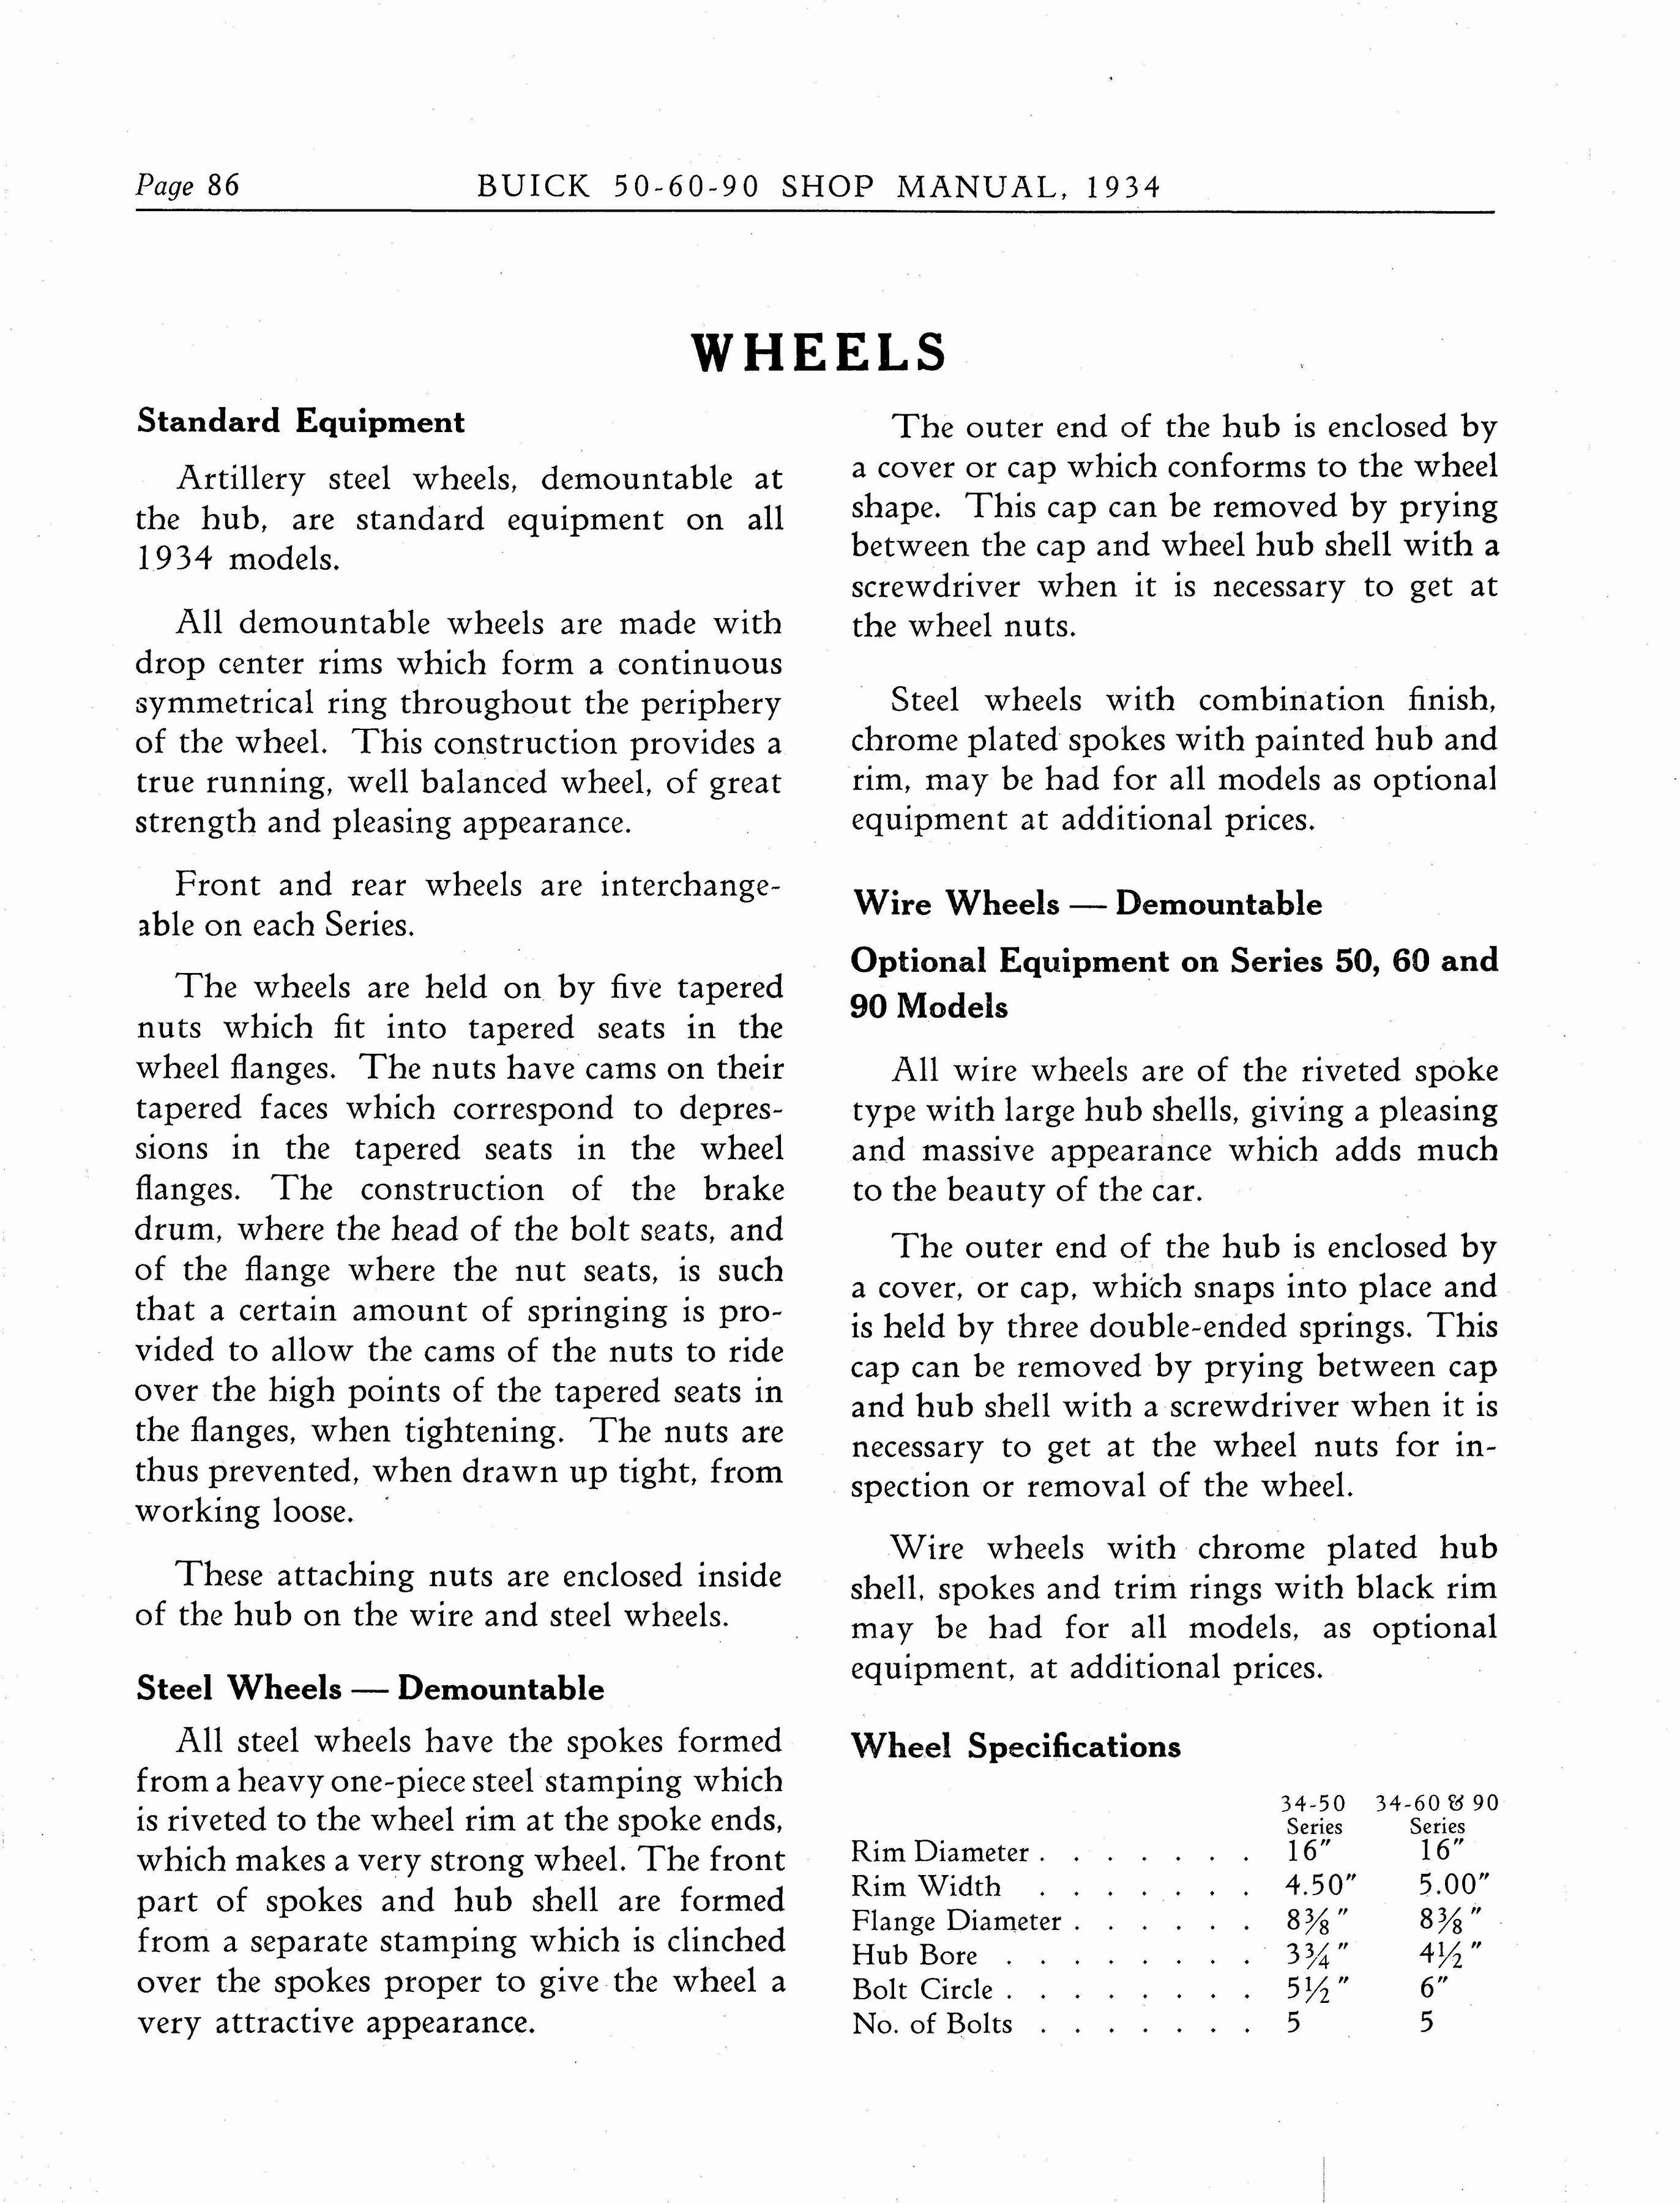 n_1934 Buick Series 50-60-90 Shop Manual_Page_087.jpg